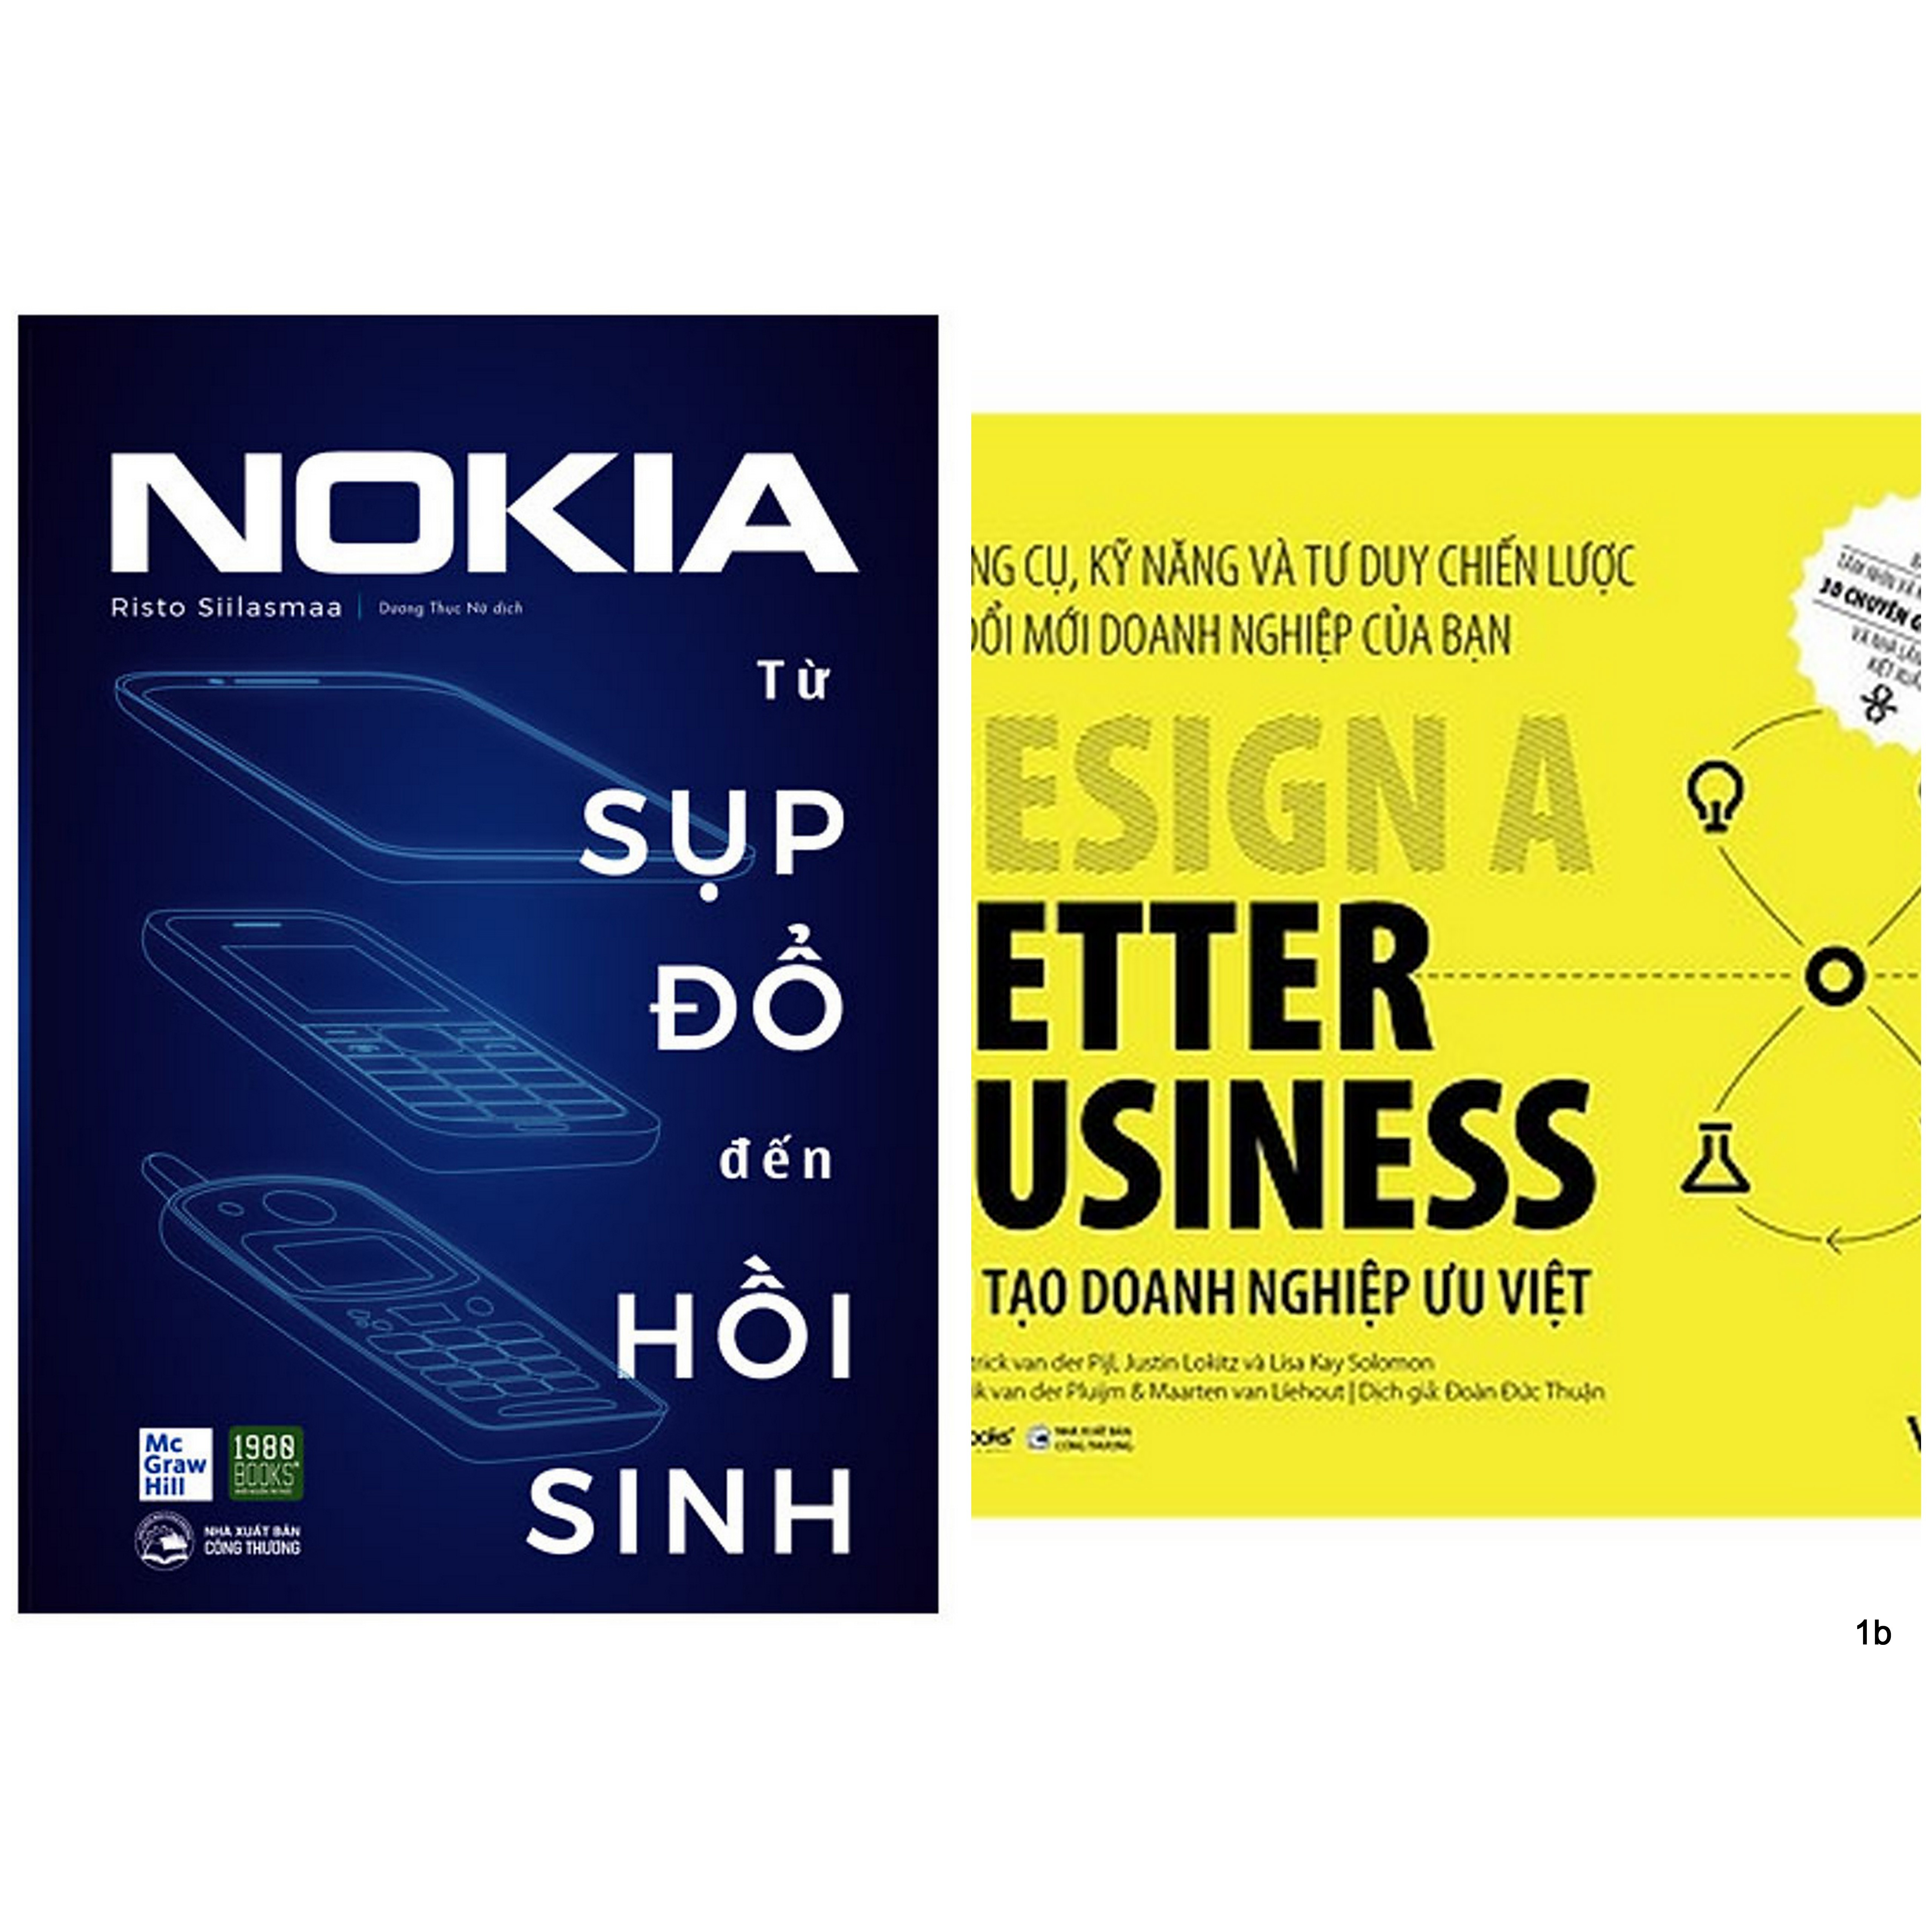 Combo 2 Cuốn: Kiến Tạo Doanh Nghiệp Ưu Việt + Nokia - Từ Sụp Đổ Đến Hồi Sinh